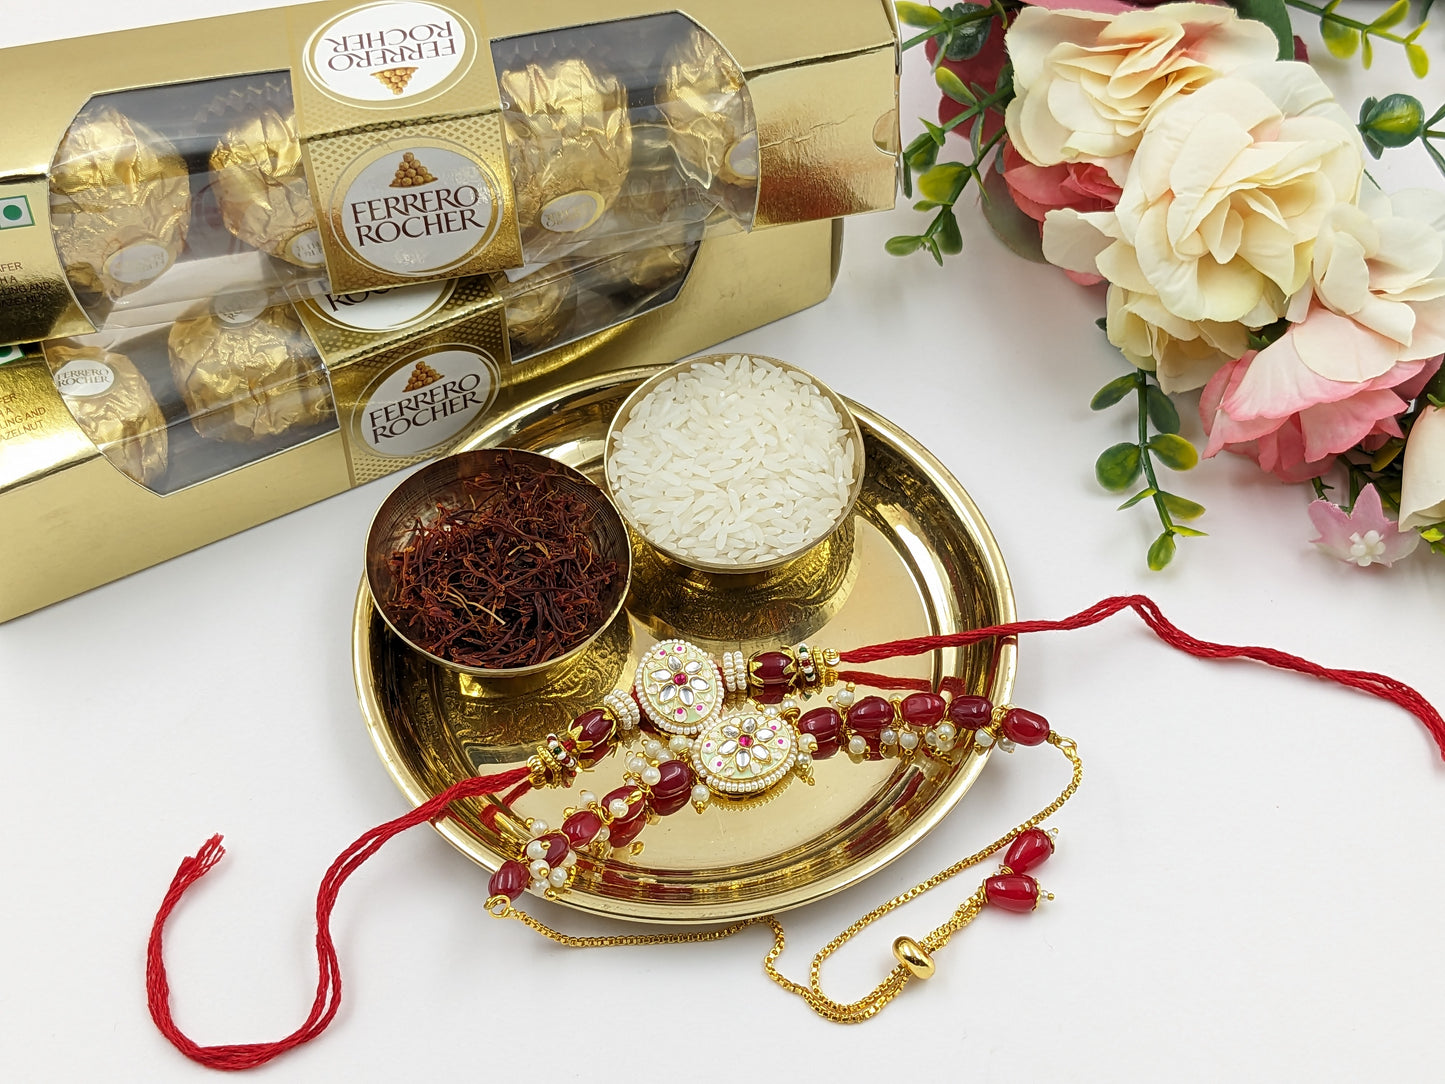 Ruby Rakhi Set with Ferrero Rocher